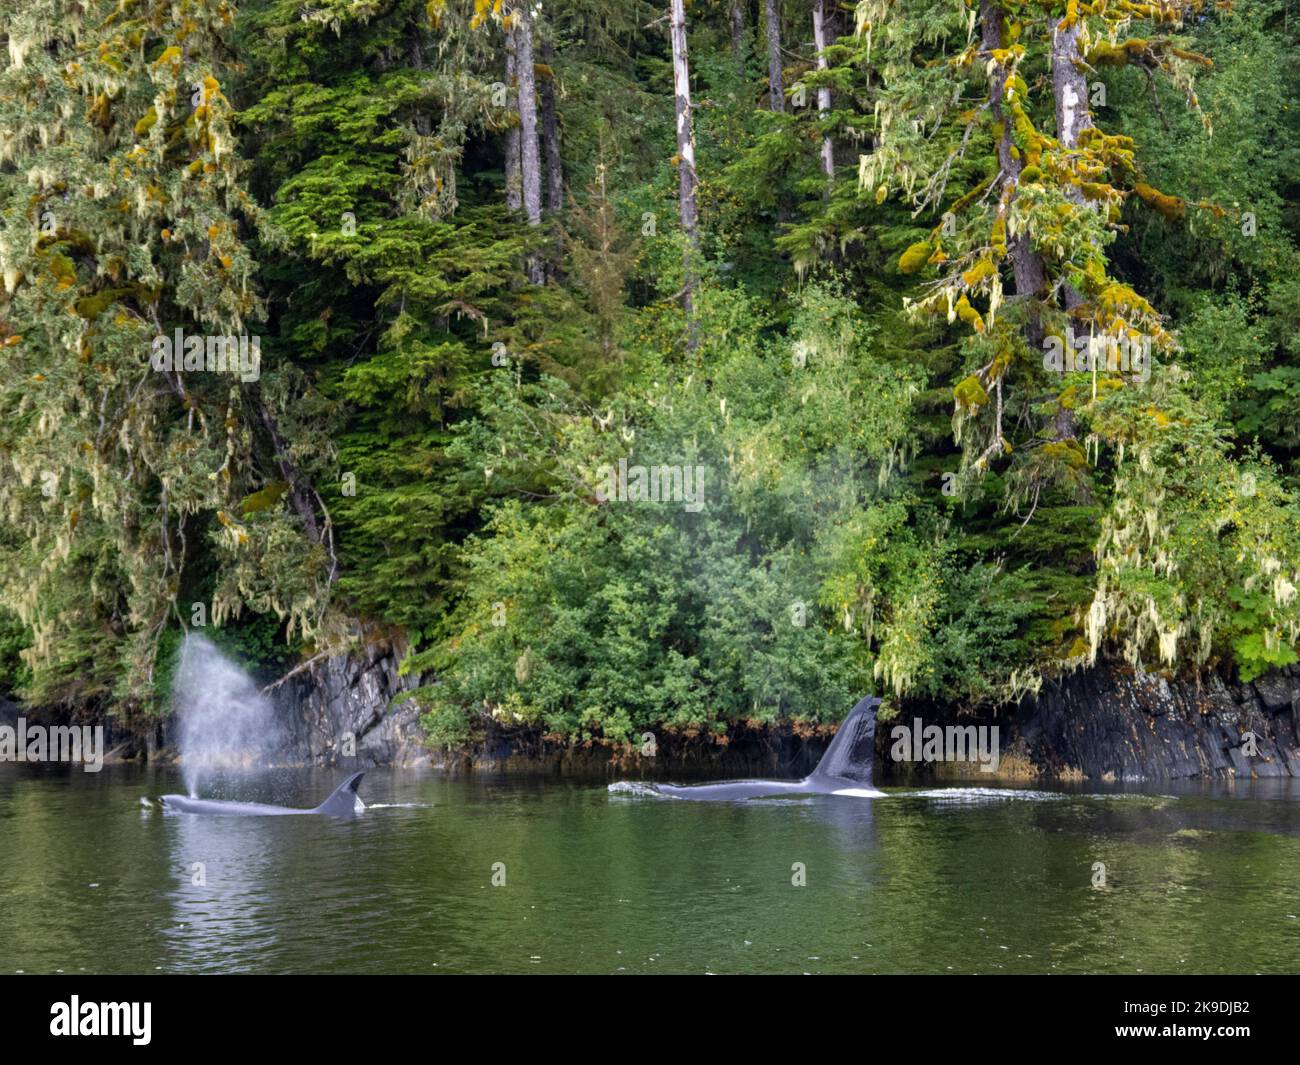 Baleines Orca, forêt nationale de Tongass, Alaska. Banque D'Images